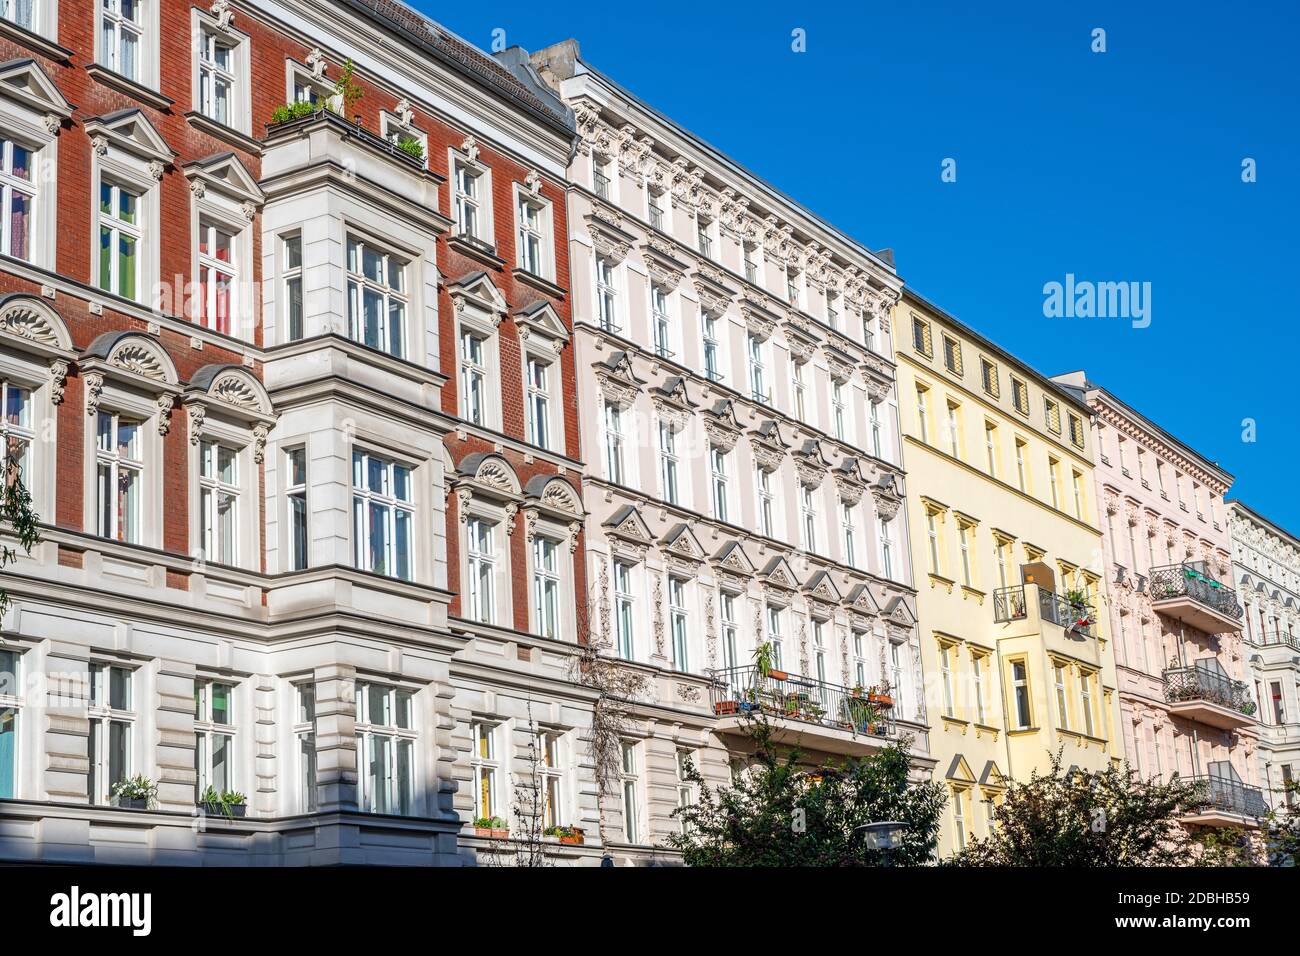 Anciens immeubles d'appartements rénovés vus à Berlin, Allemagne Banque D'Images